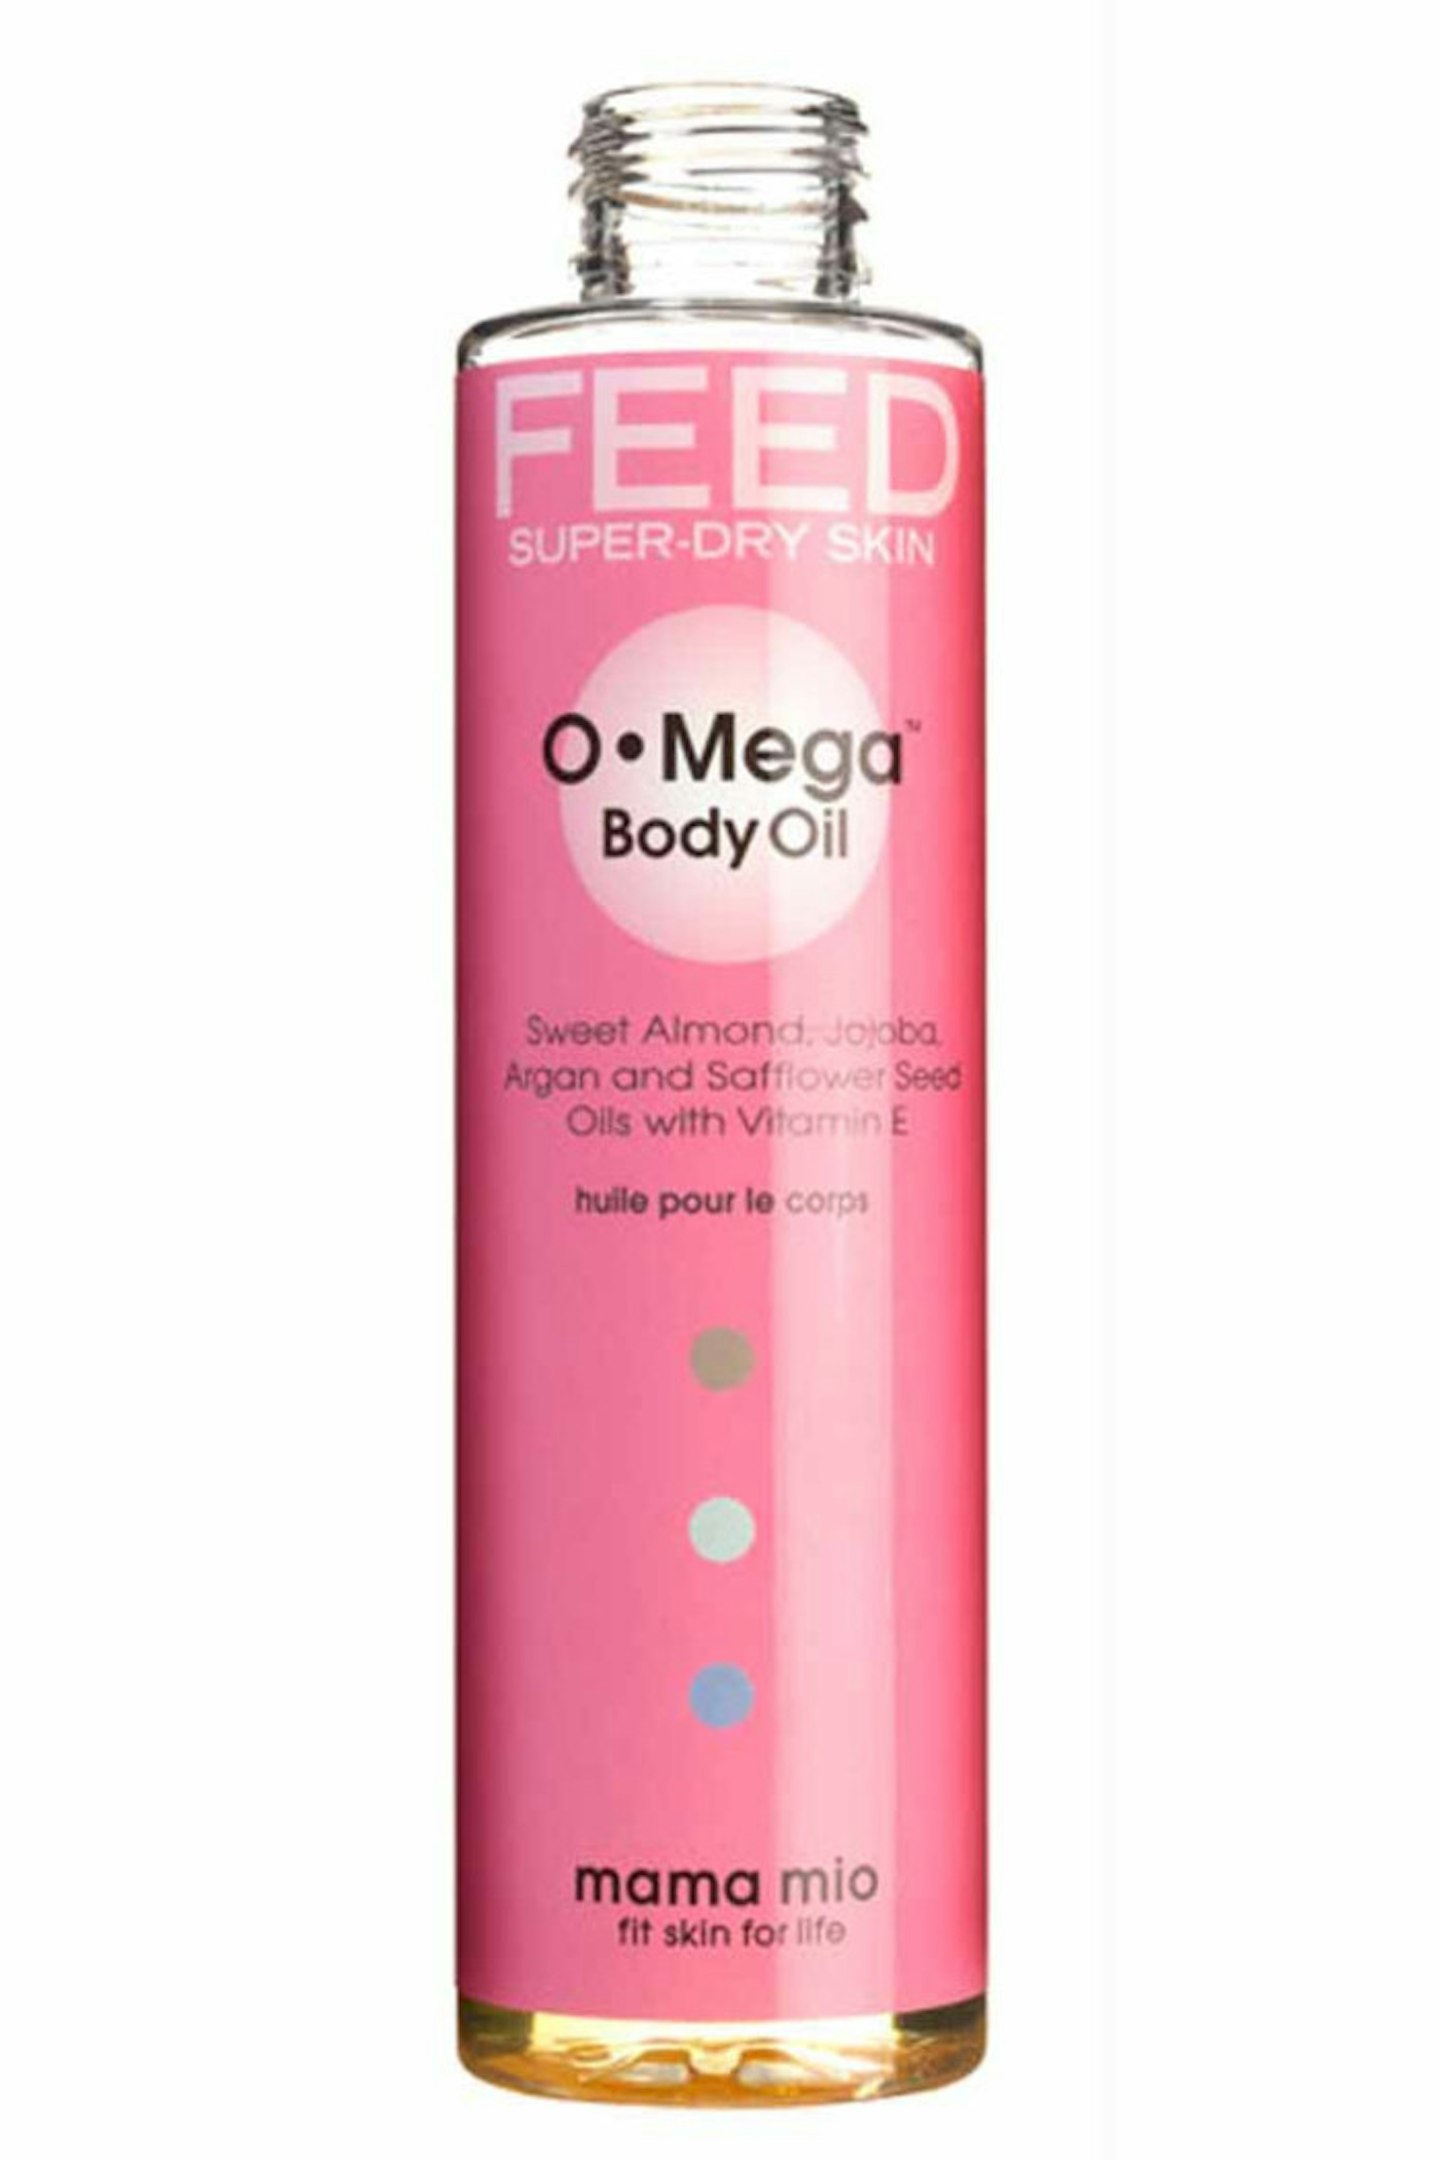 10. Mama Mio Omega Body Oil